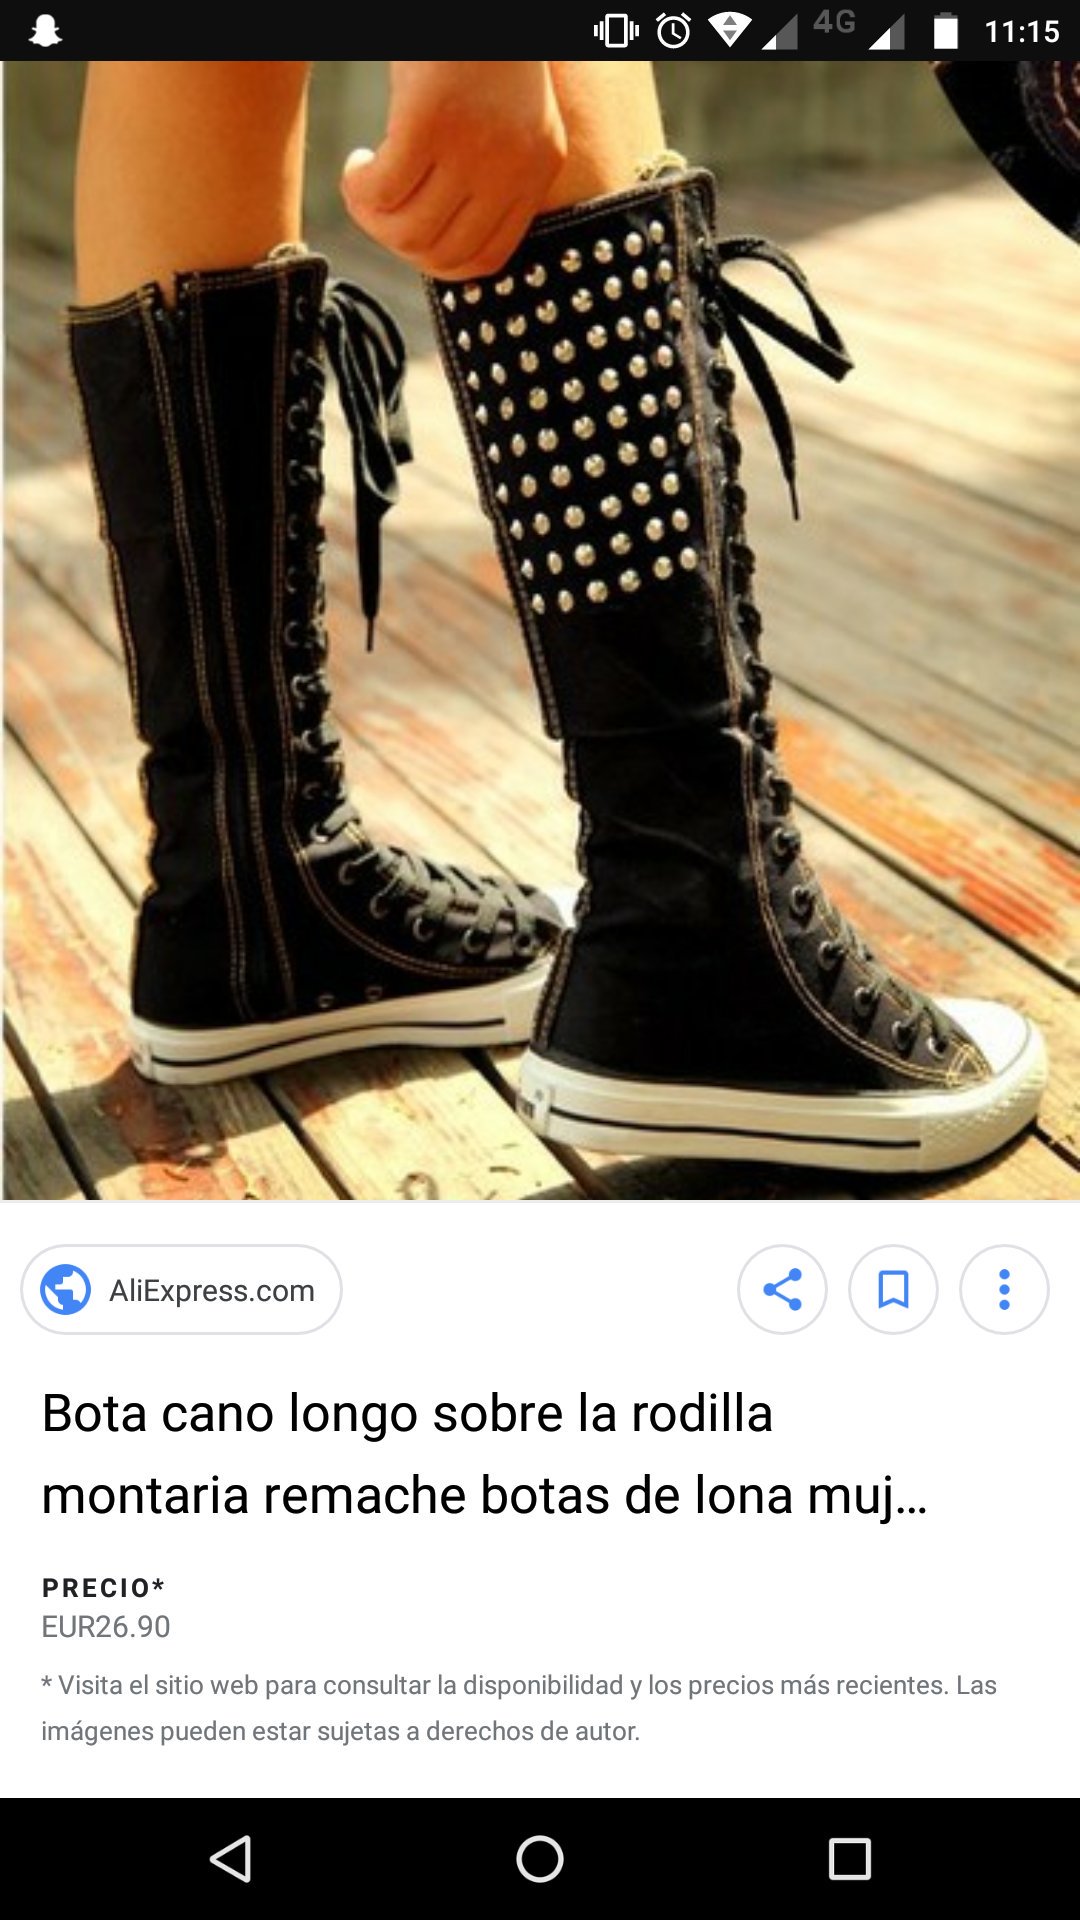 Sofia on "@cornulda Y nadie usó estás zapatillas PORQUE EN NOVELA??????? O SOLO YO LAS COMPRABA QUE HORROR https://t.co/g1FofckoP2" / Twitter